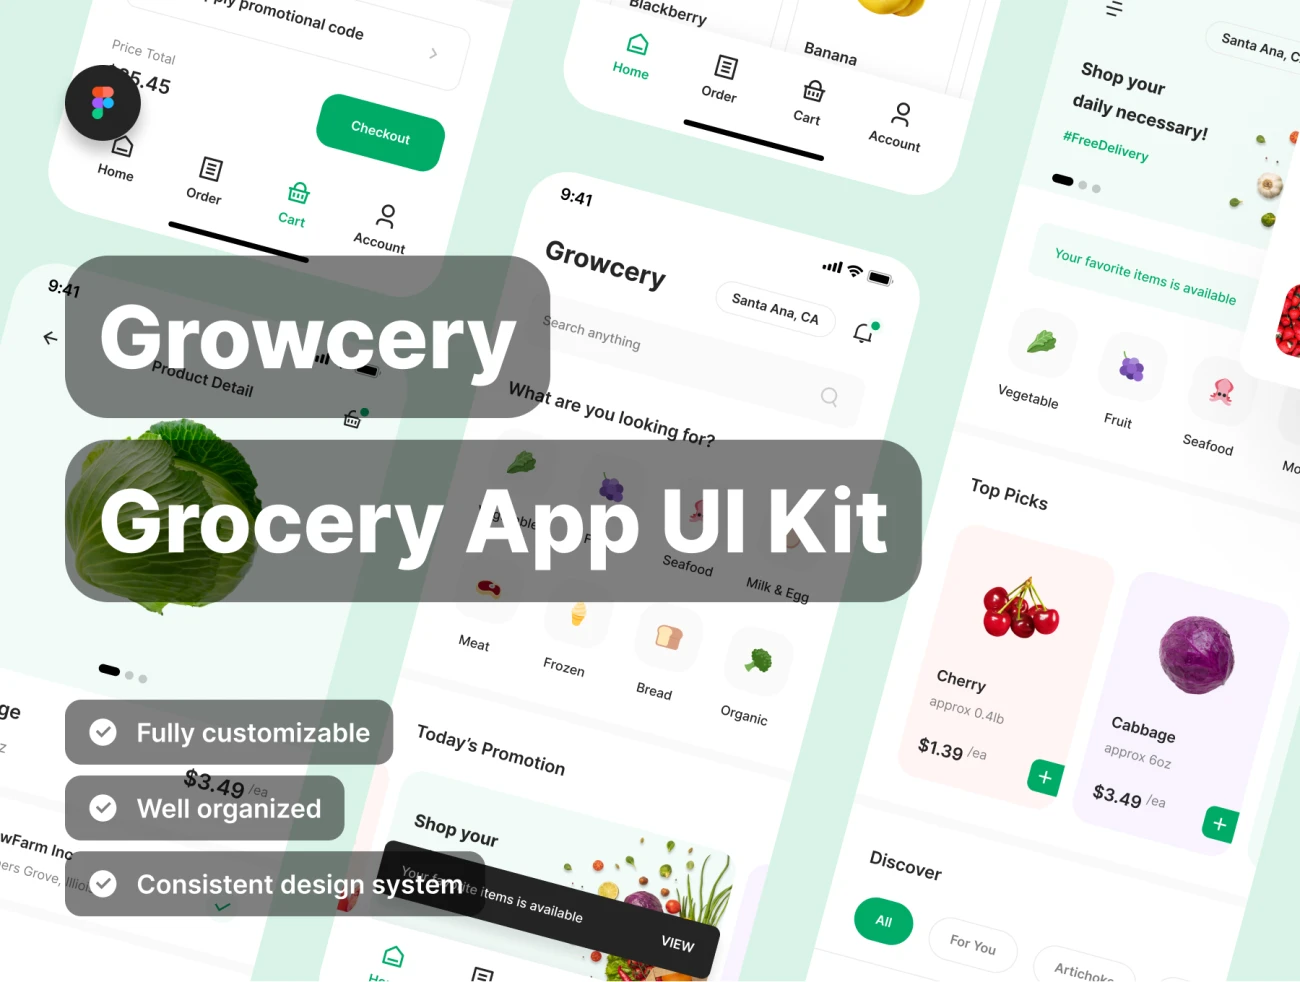 70屏高质量蔬菜水果生鲜日用百货采购应用UI设计套件素材 Growcery – Grocery App UI Kit .figma插图1